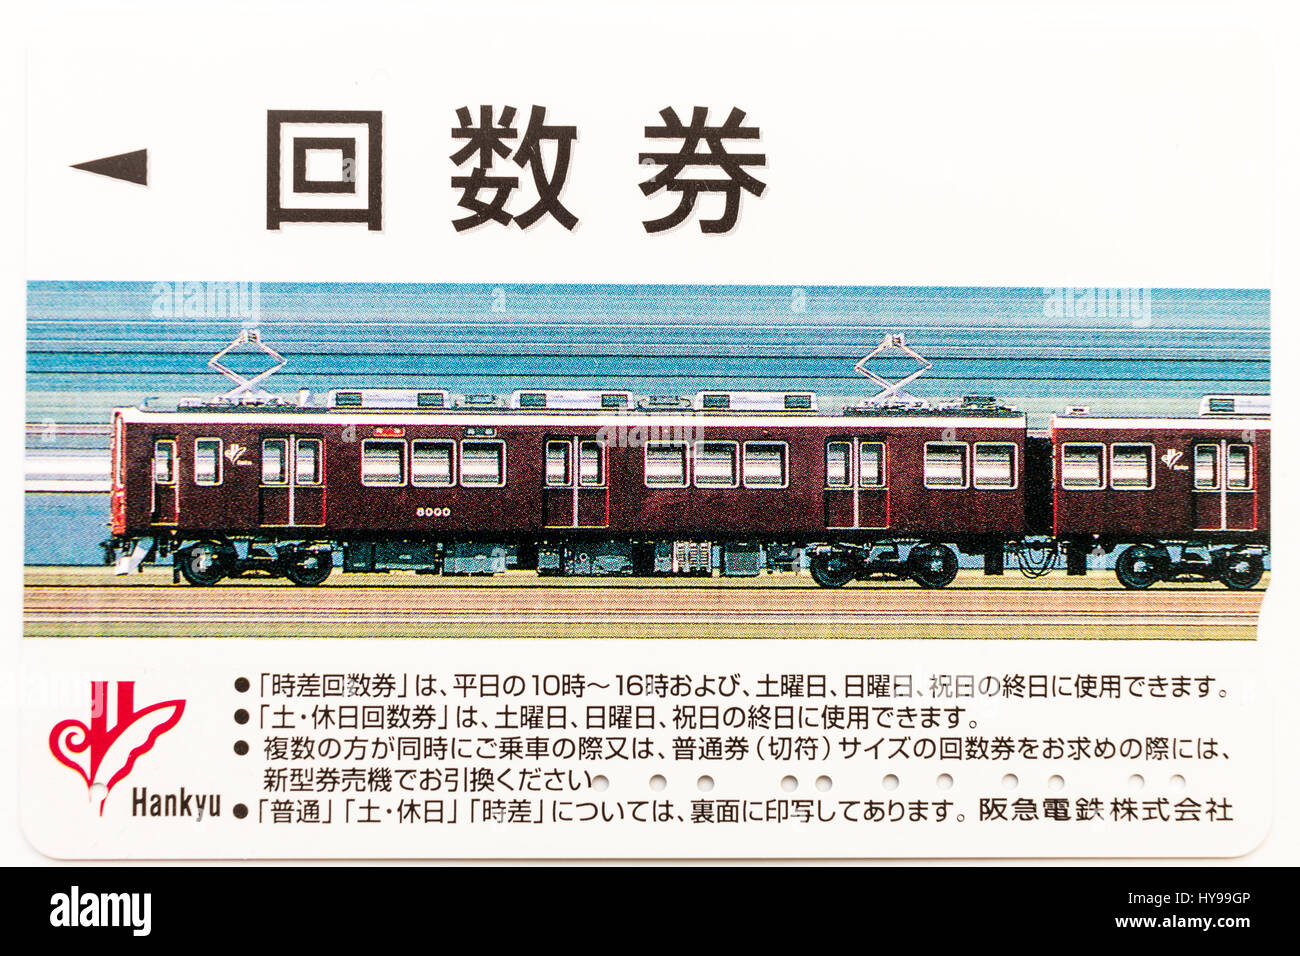 Giapponese stazione Hankyu pre-pagamento elettronico multi-ticket card. Immagine del treno di hankyu. Foto Stock